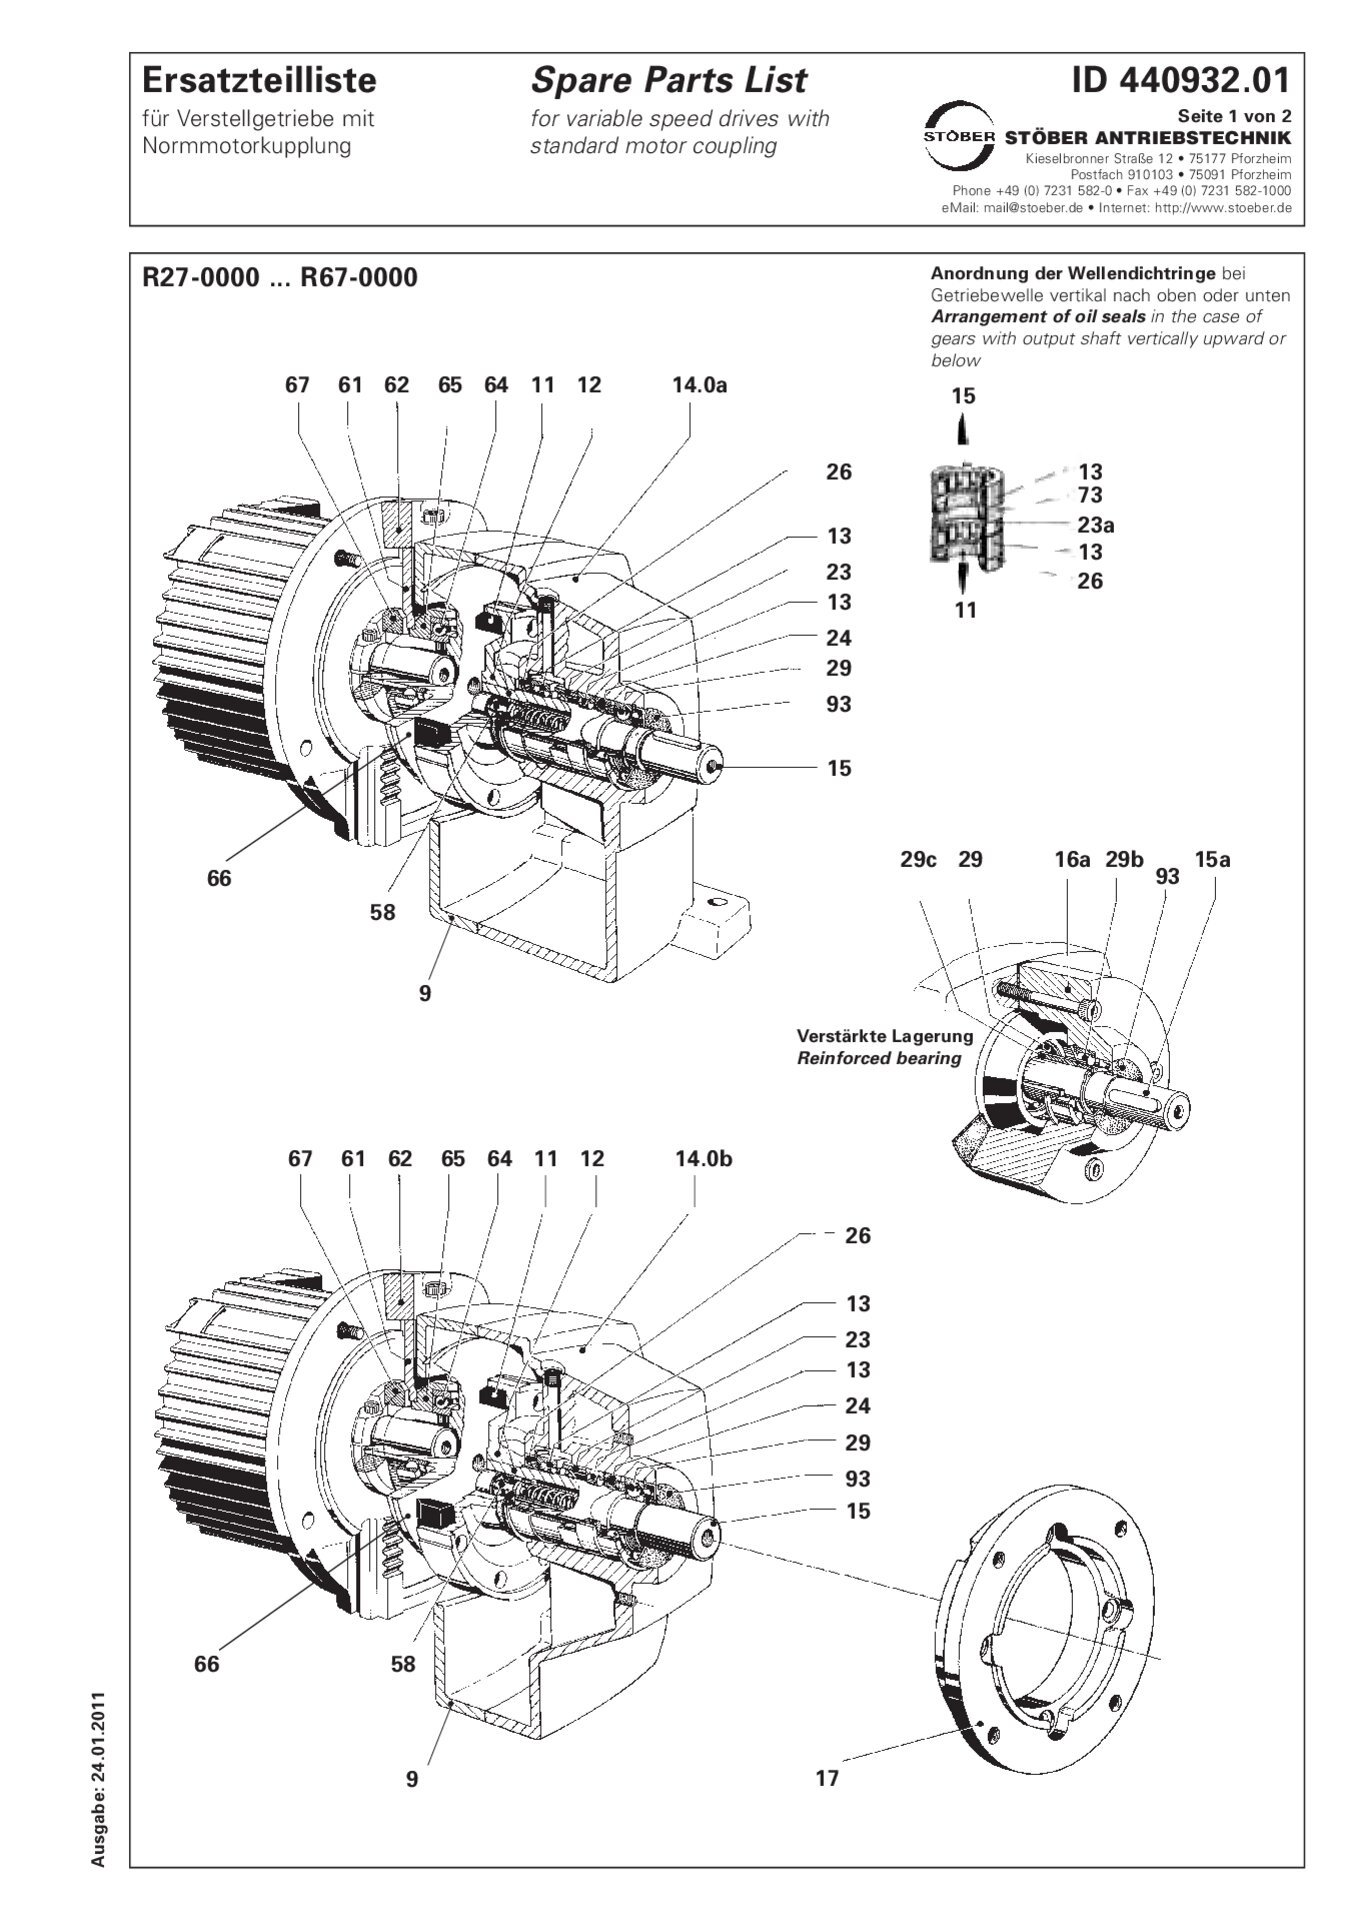 Ersatzteilliste R27-0000 - R67-0000 mit Normmotorkupplung